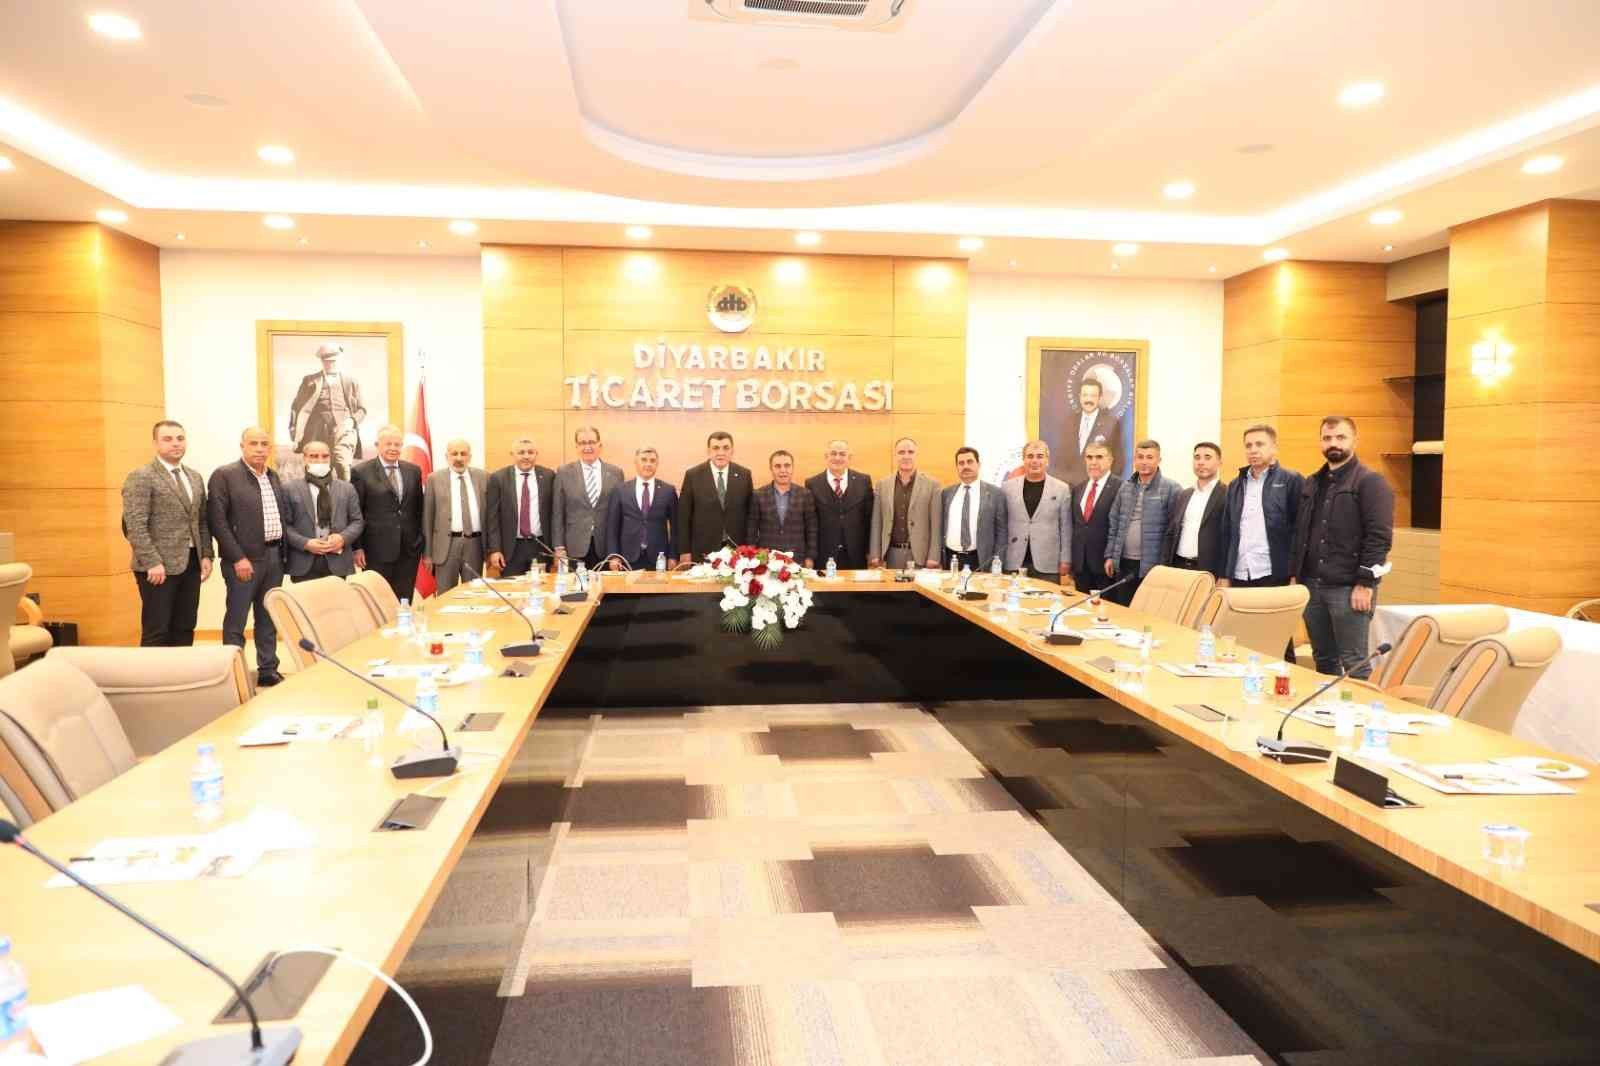 Diyarbakır’a gelen oda ve borsa başkanlarından DTB’ye ziyaret #diyarbakir